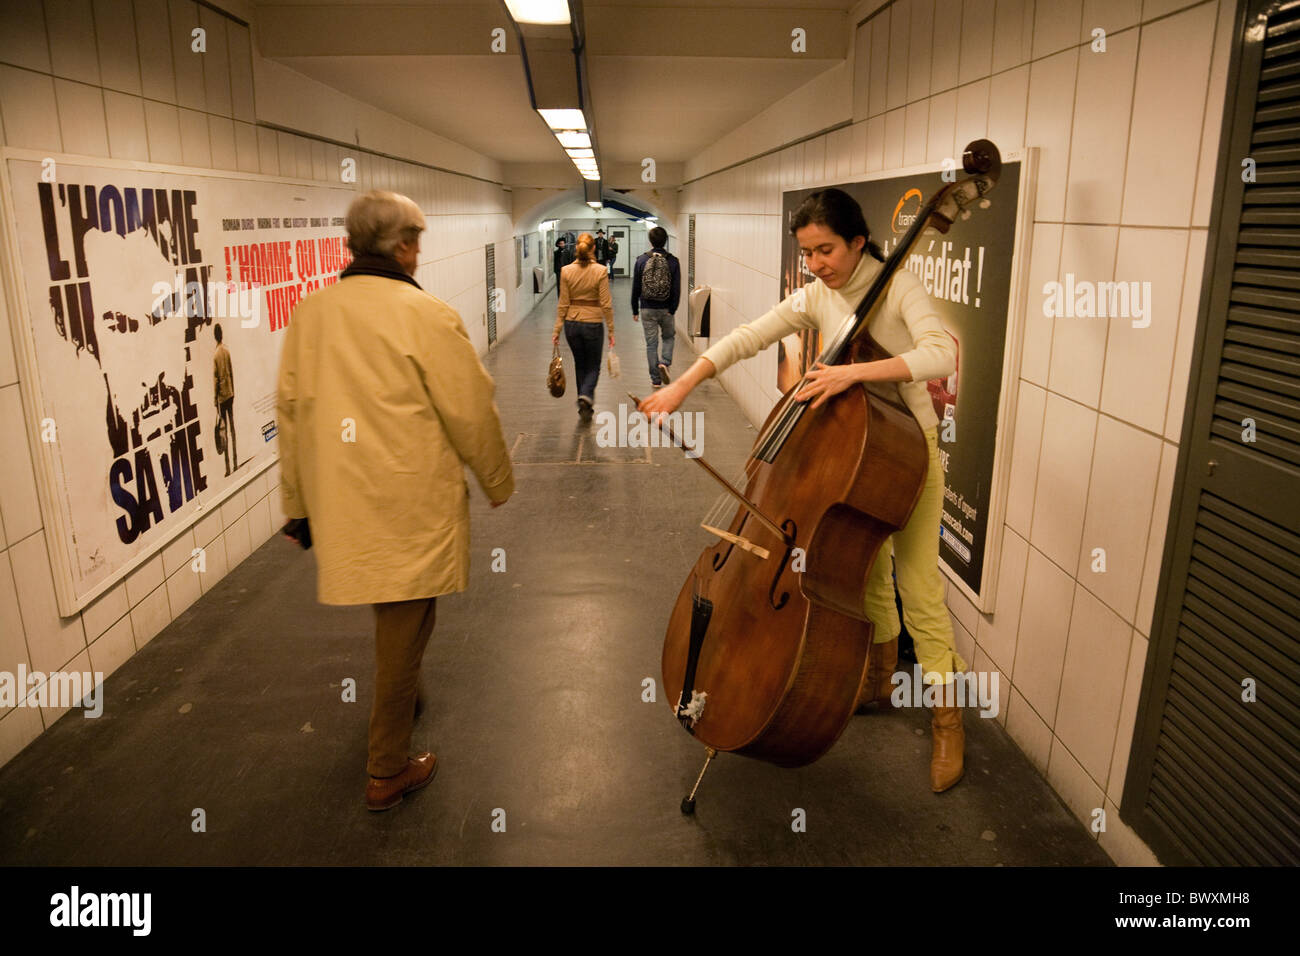 Une femelle musicien ambulant jouant la musique classique sur une contrebasse dans le métro, le Louvre, Paris France Banque D'Images